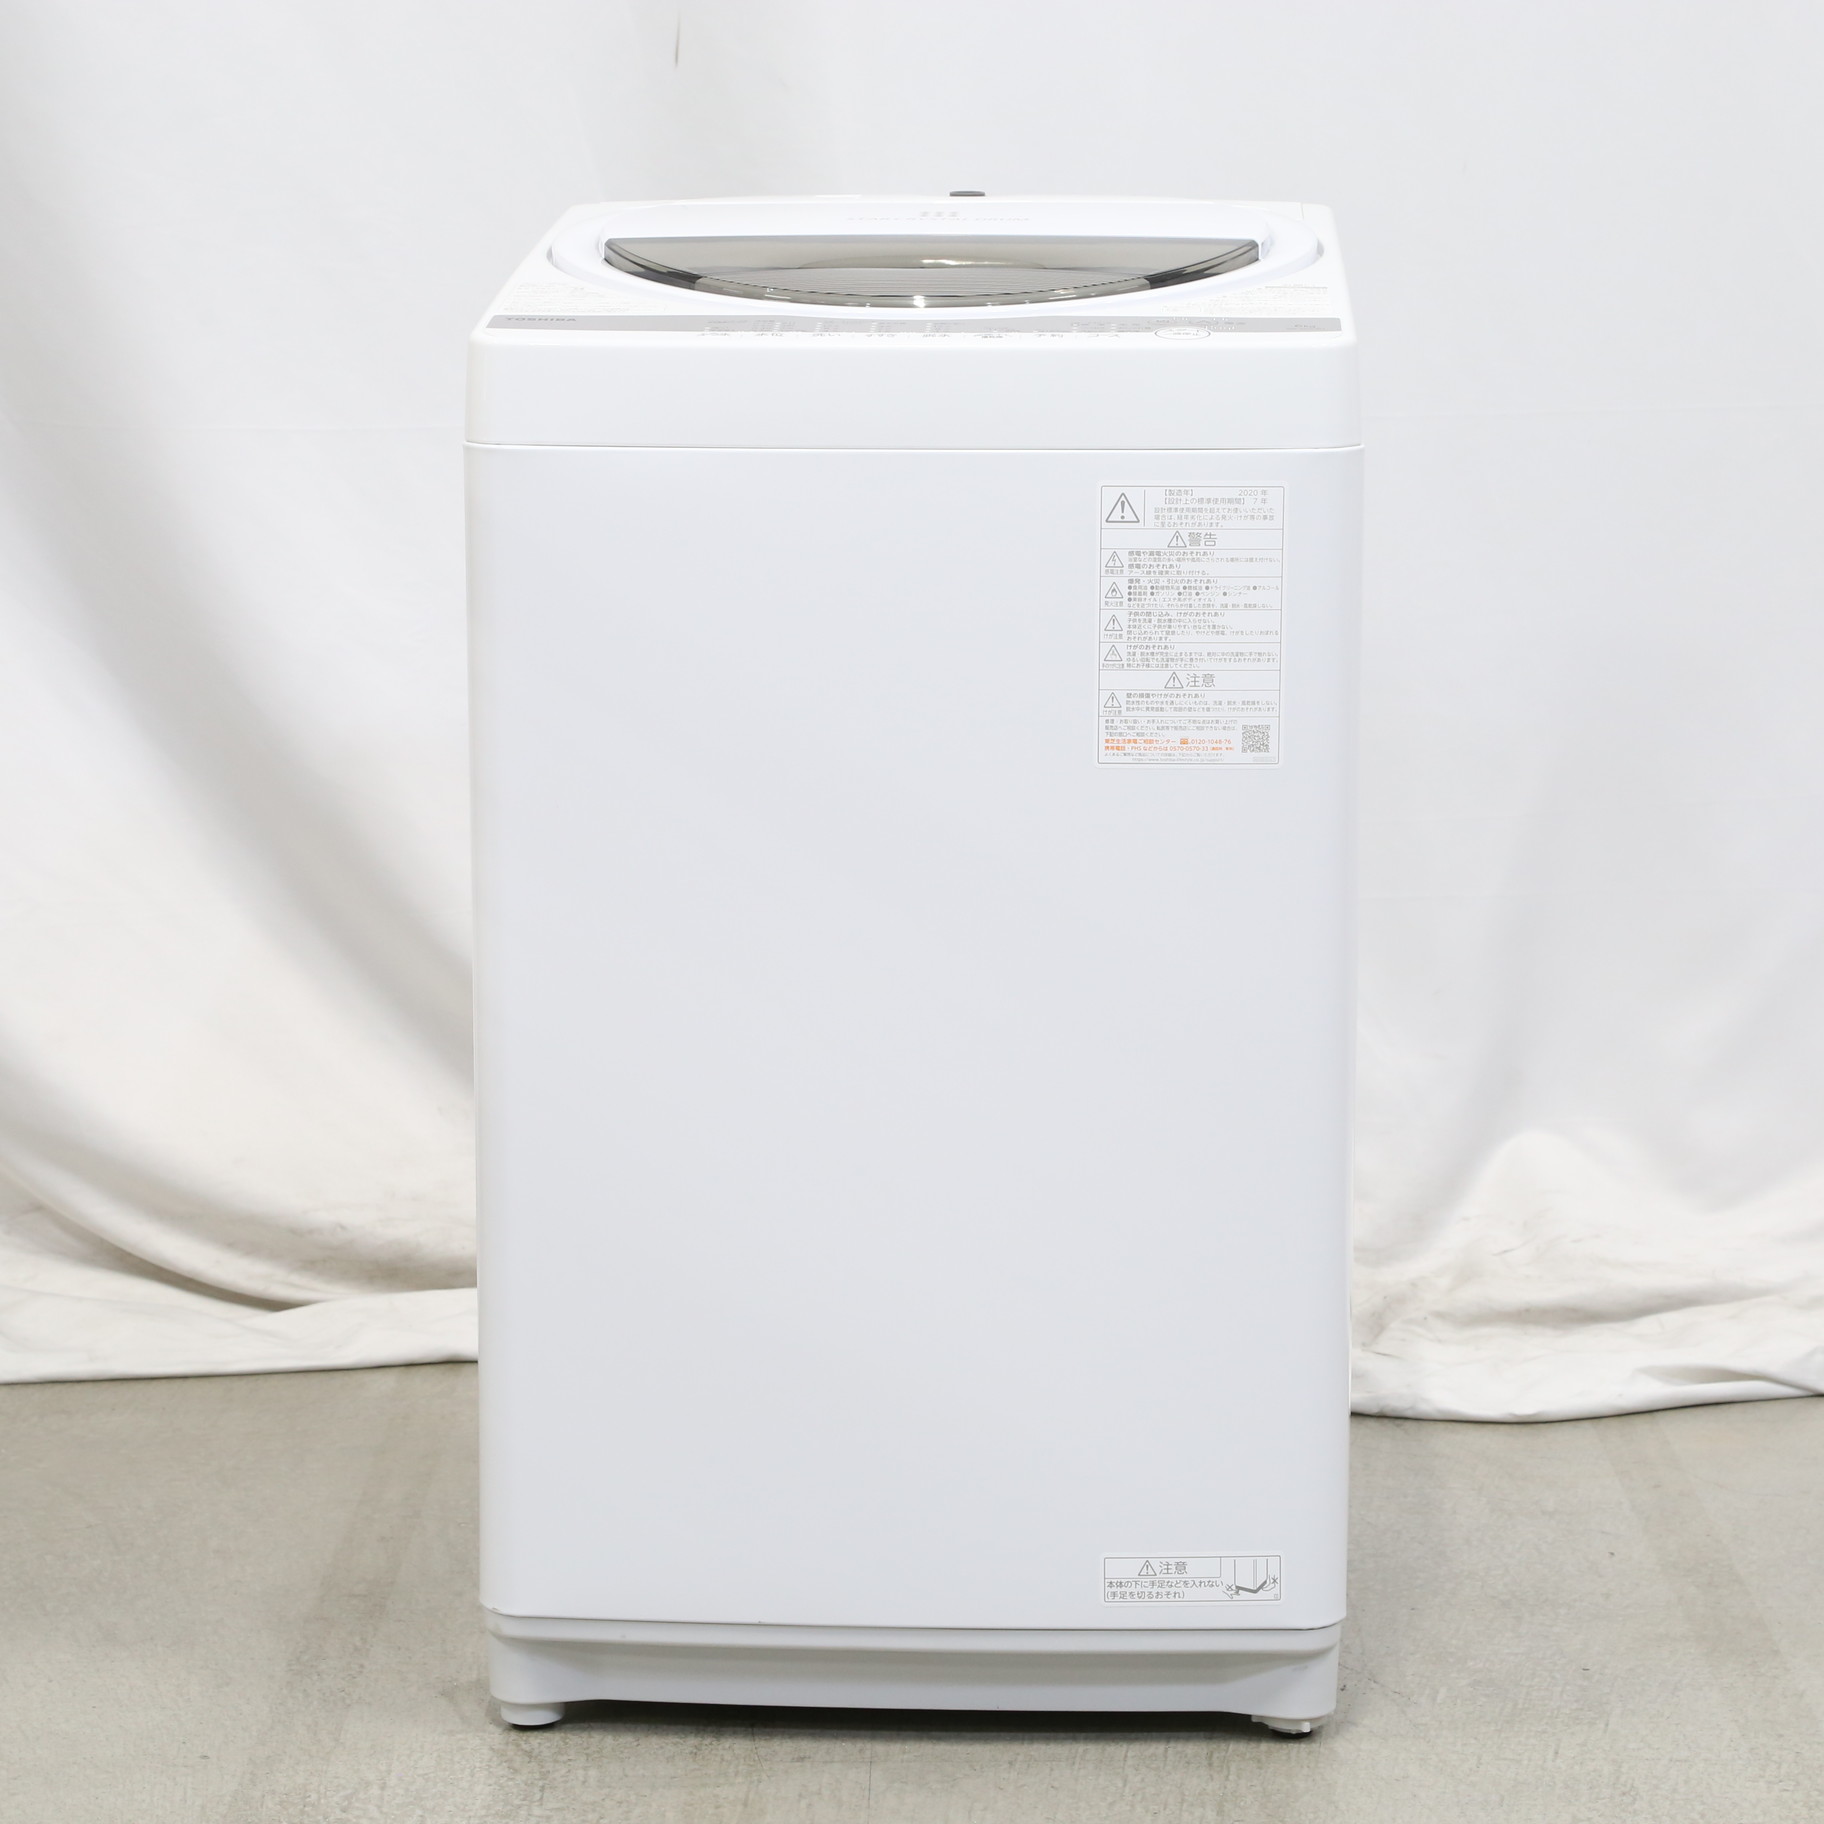 中古】〔展示品〕 全自動洗濯機 グランホワイト AW-6G9-W ［洗濯6.0kg 